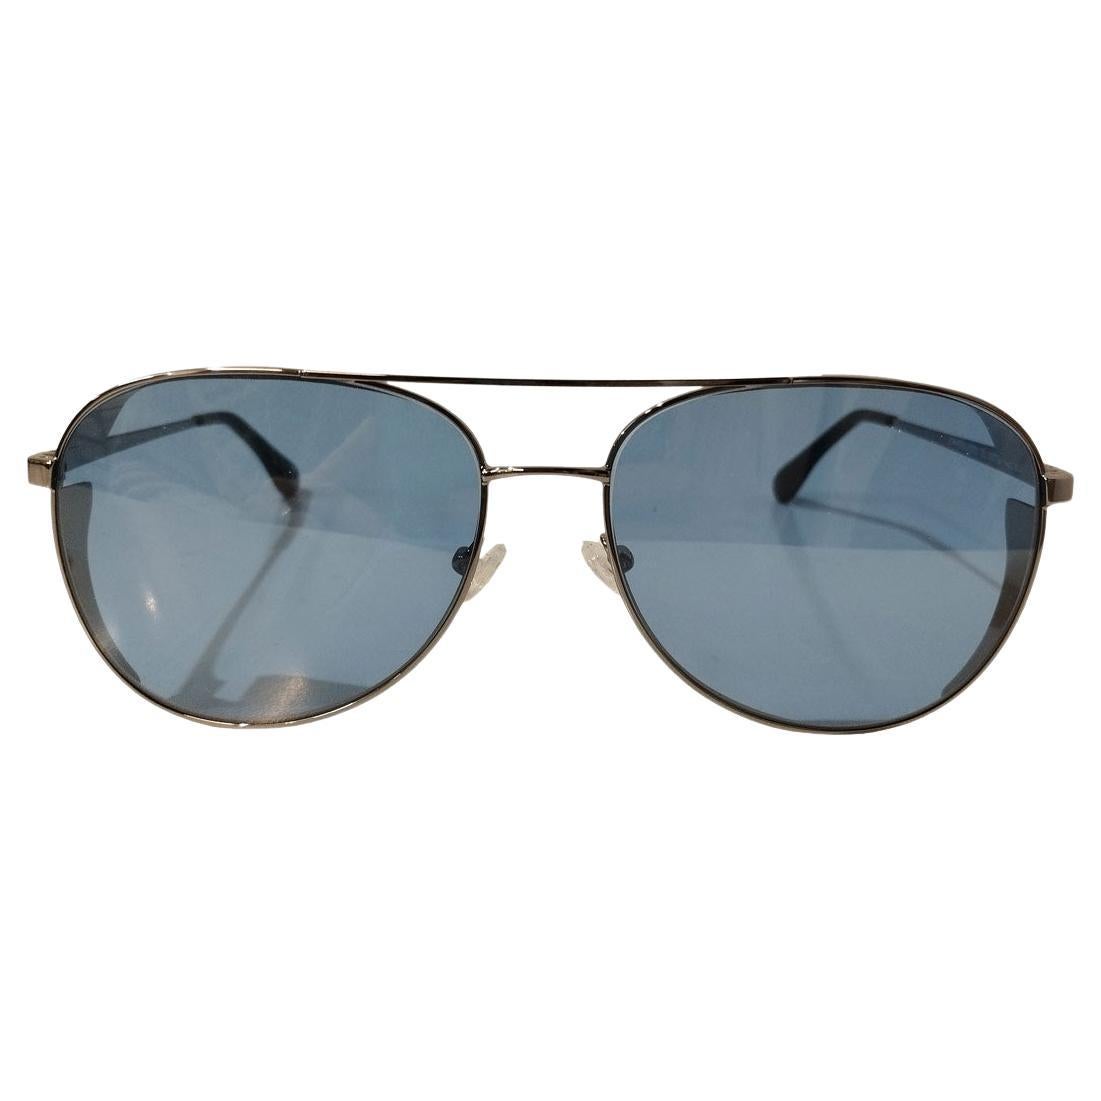 Bertone Design Stratos Zero Limited Edition Sunglasses For Sale